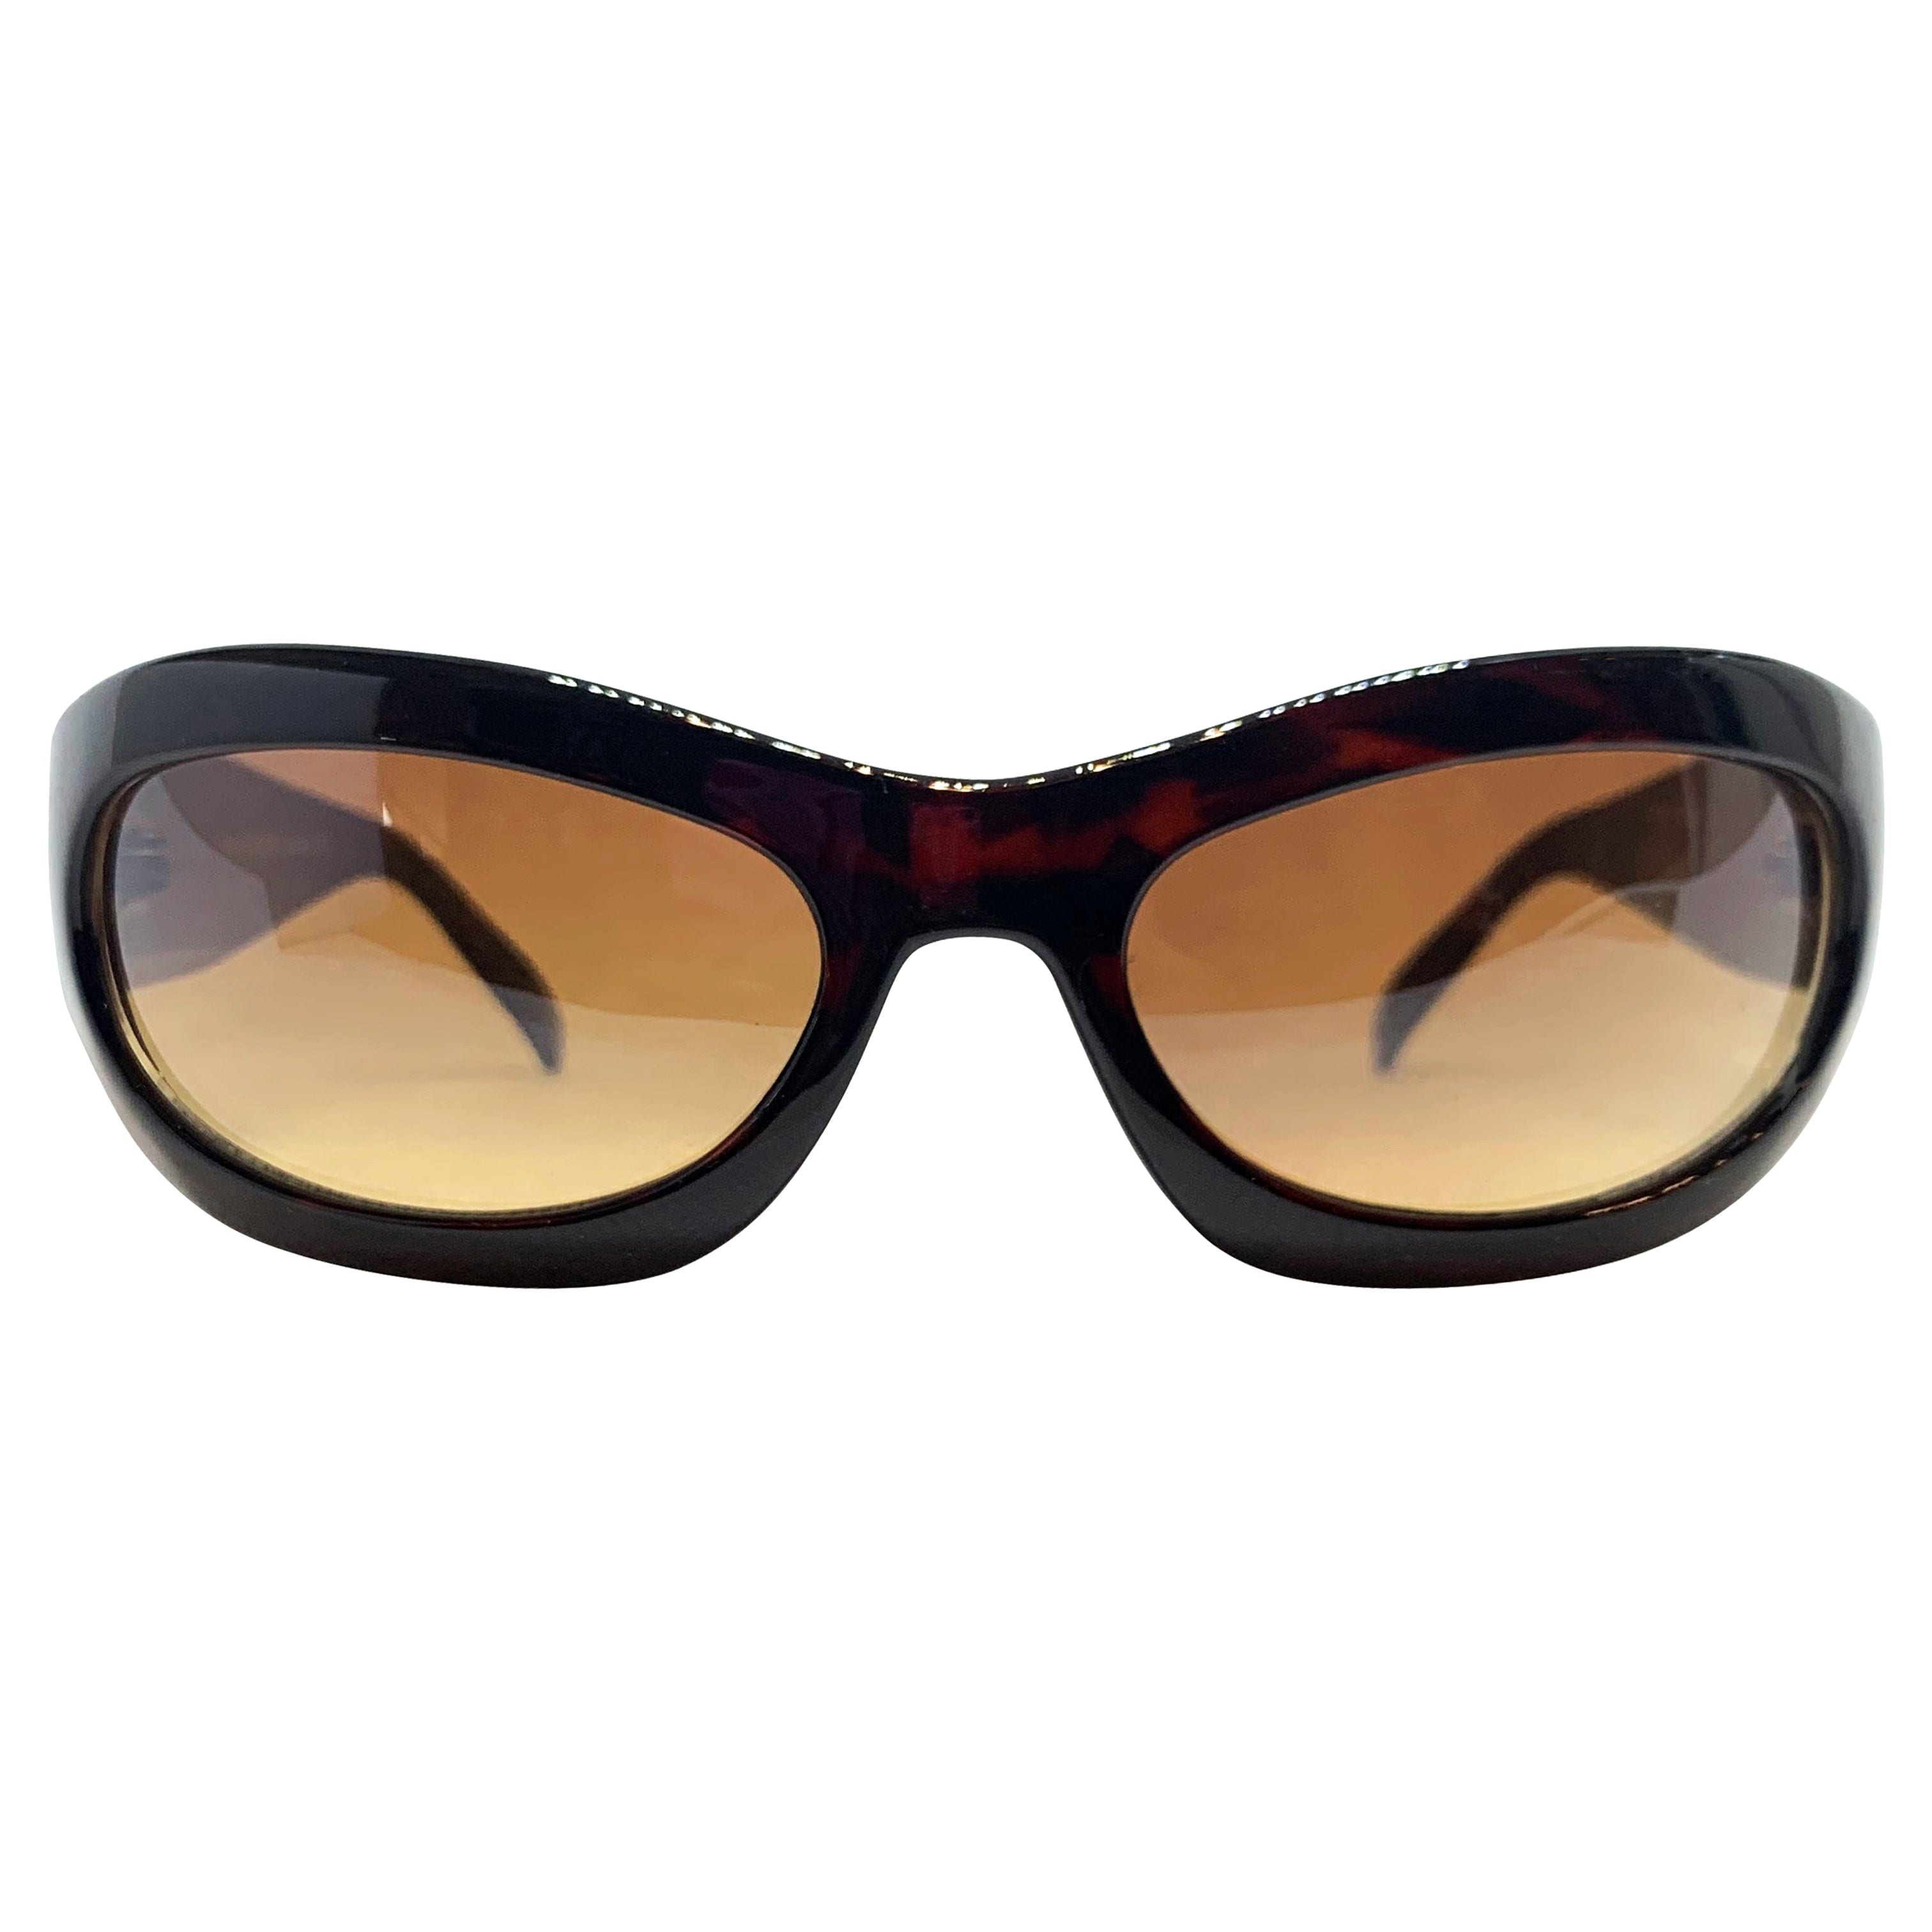 BERRYLICIOUS Tortoise/Amber Round Sunglasses